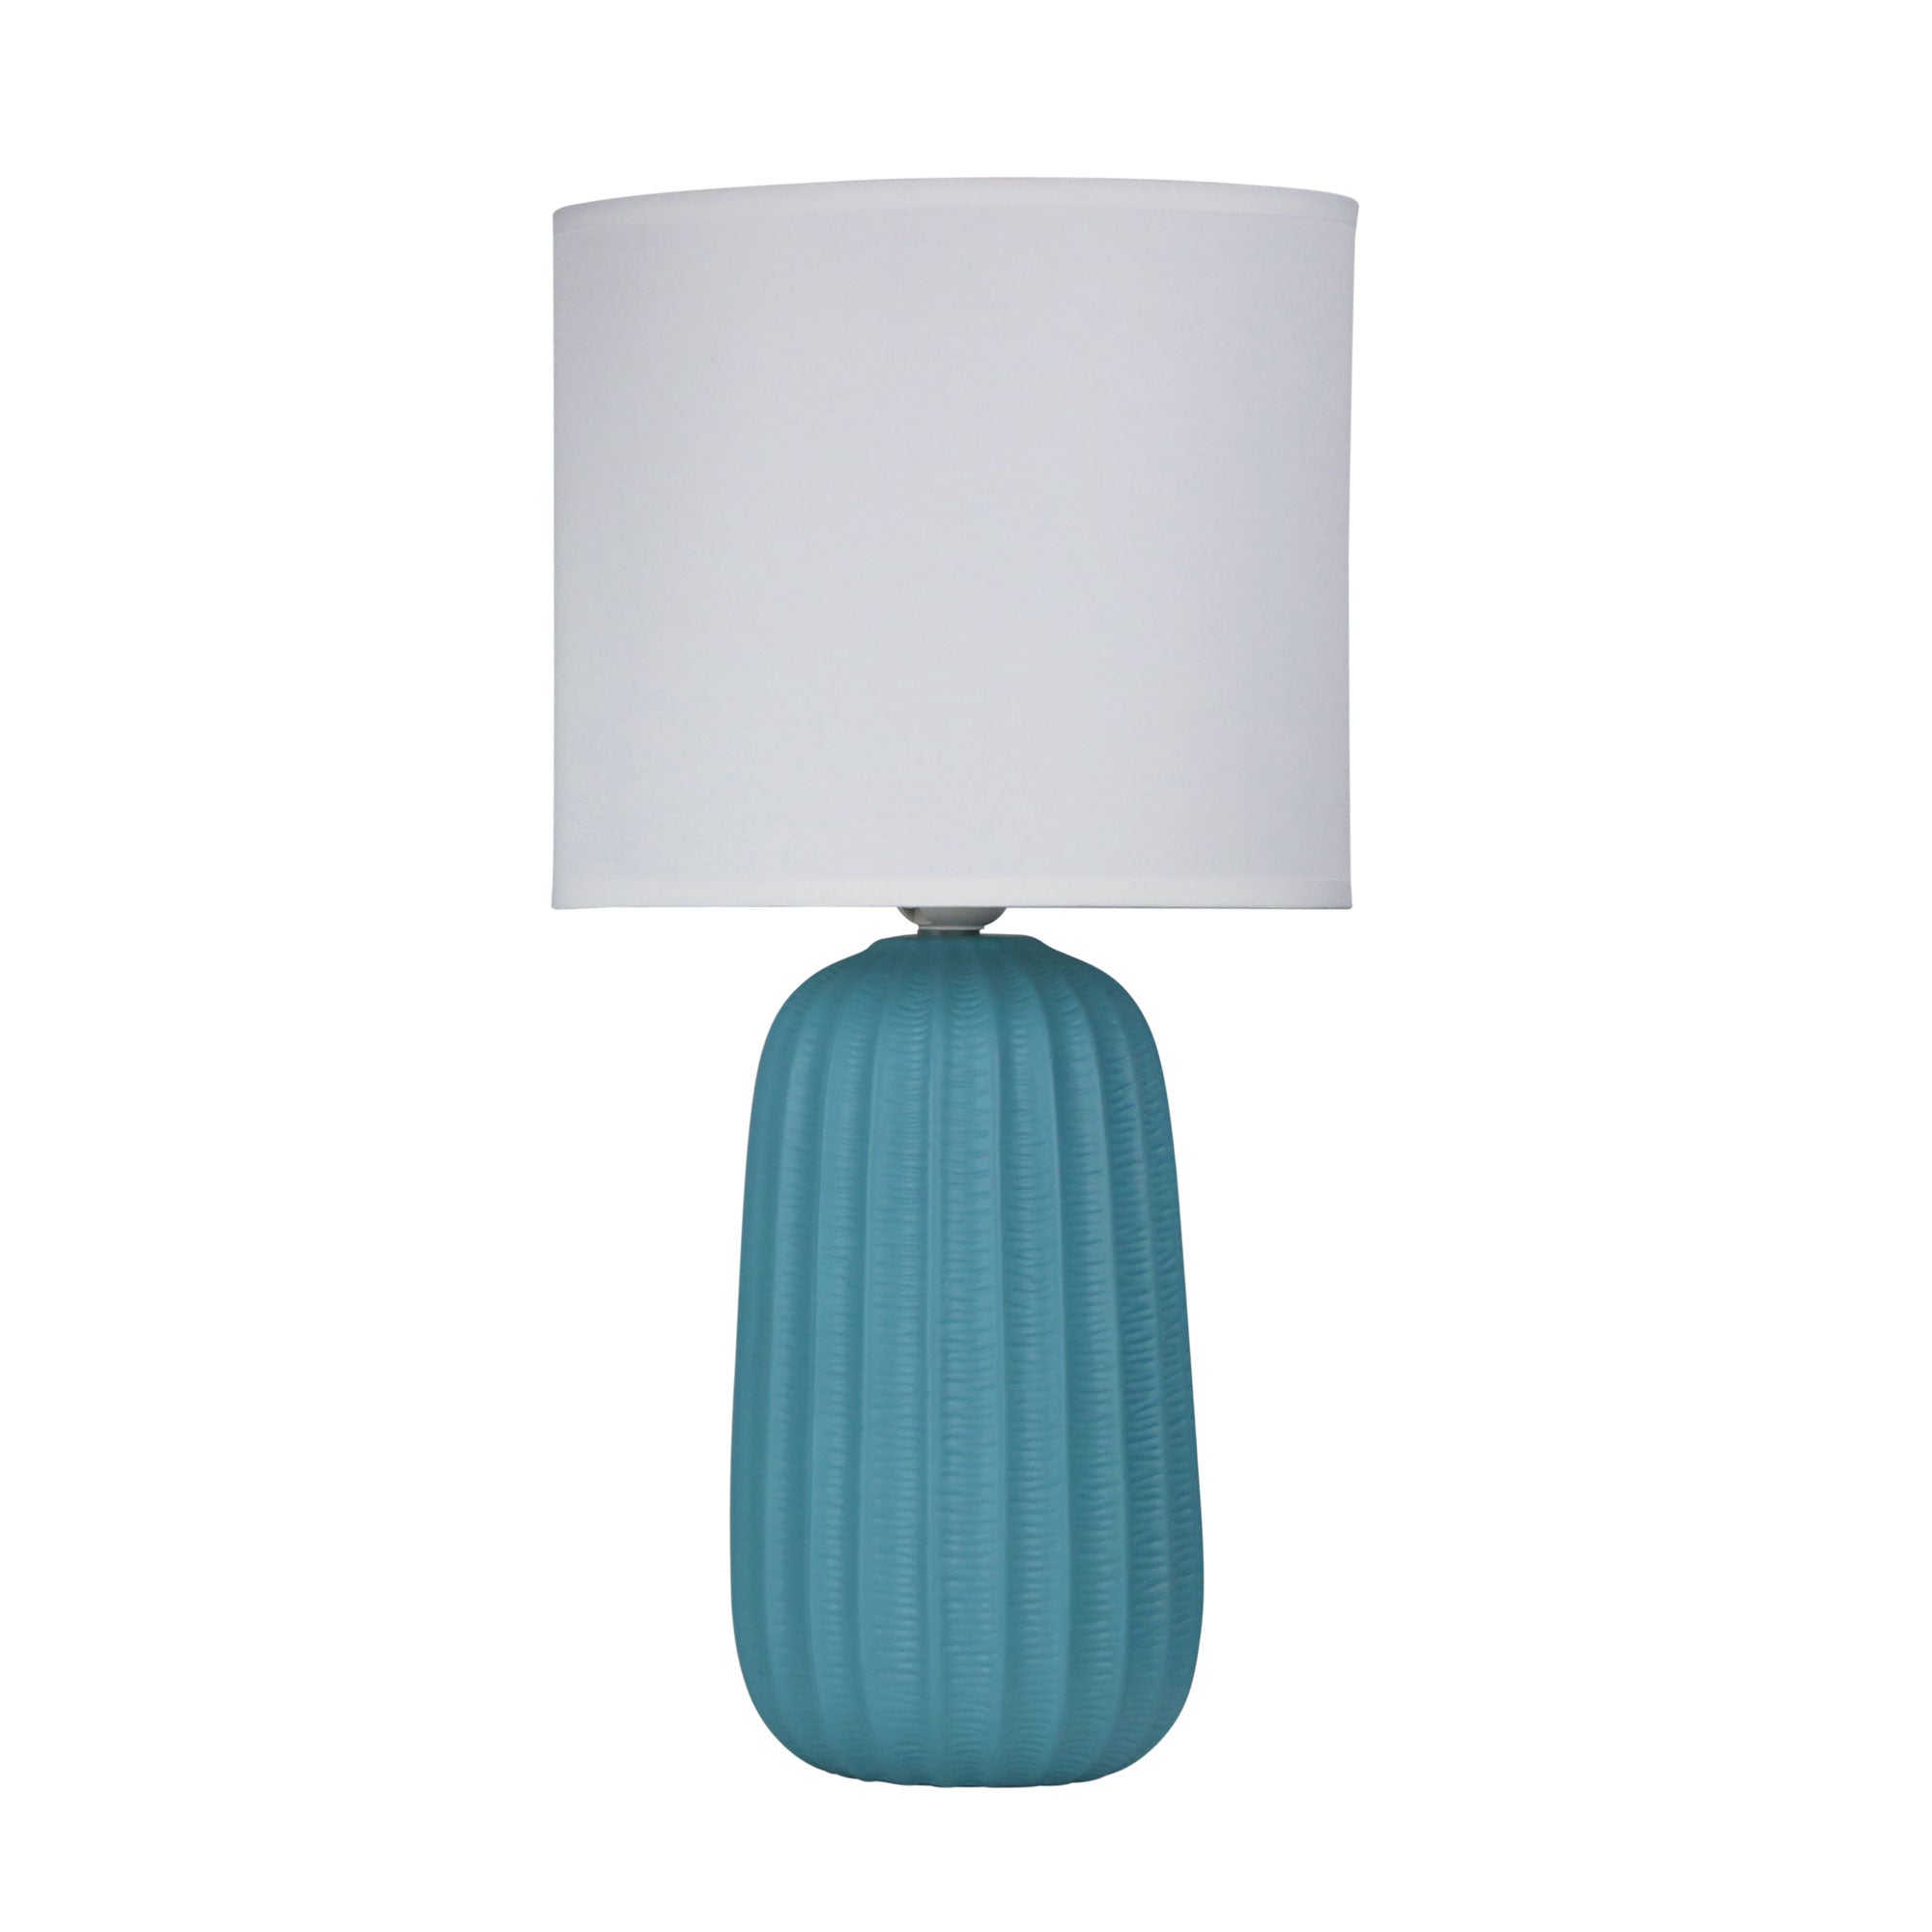 Benjy.25 1 Light Table Lamp Blue - OL90111BL